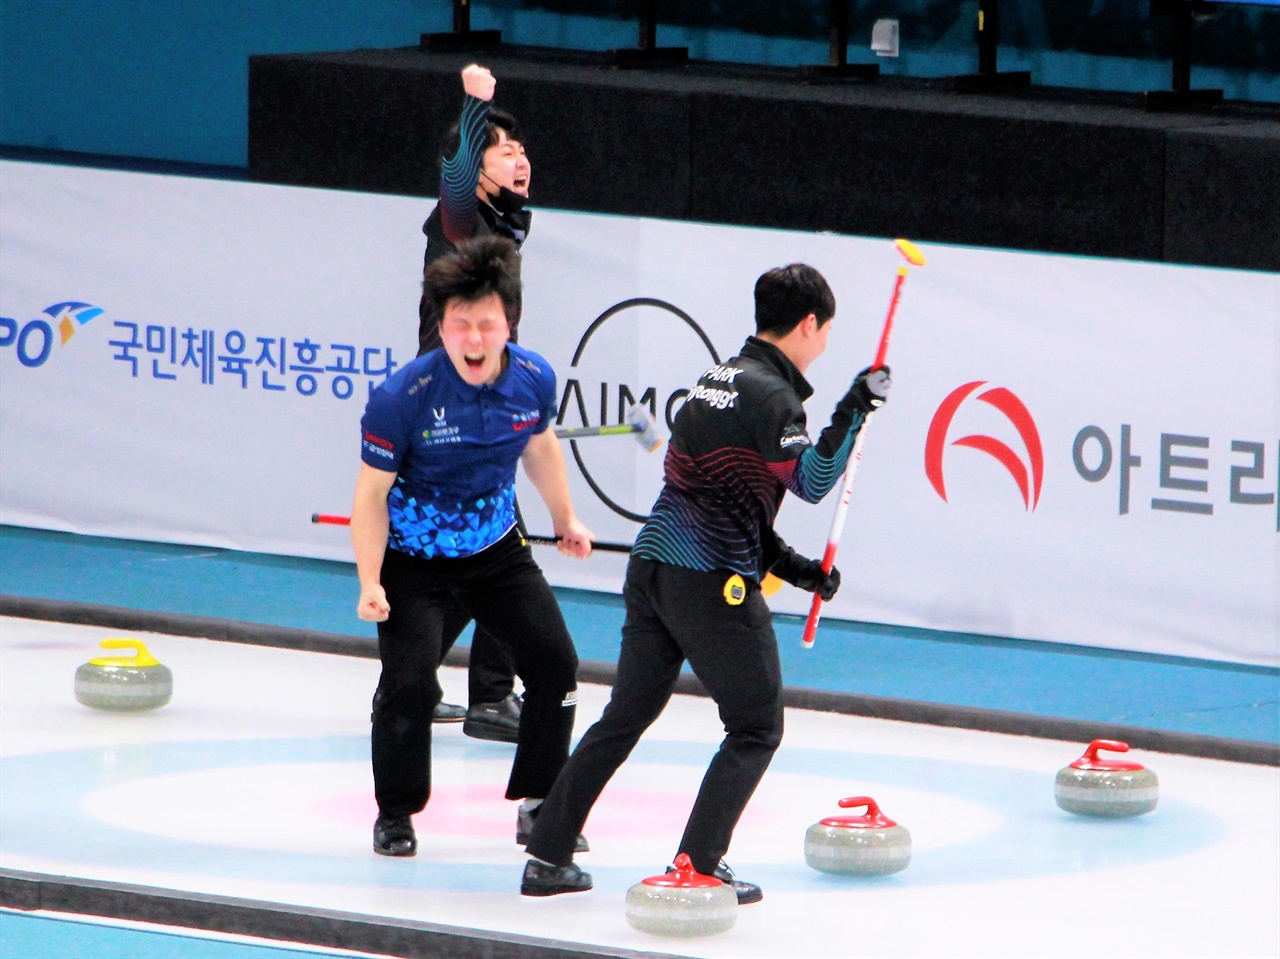  24일 열린 2020 KB금융 한국컬링선수권대회 남자부 결승전에서 경기도컬링경기연맹 선수들이 우승의 순간 기뻐하고 있다.